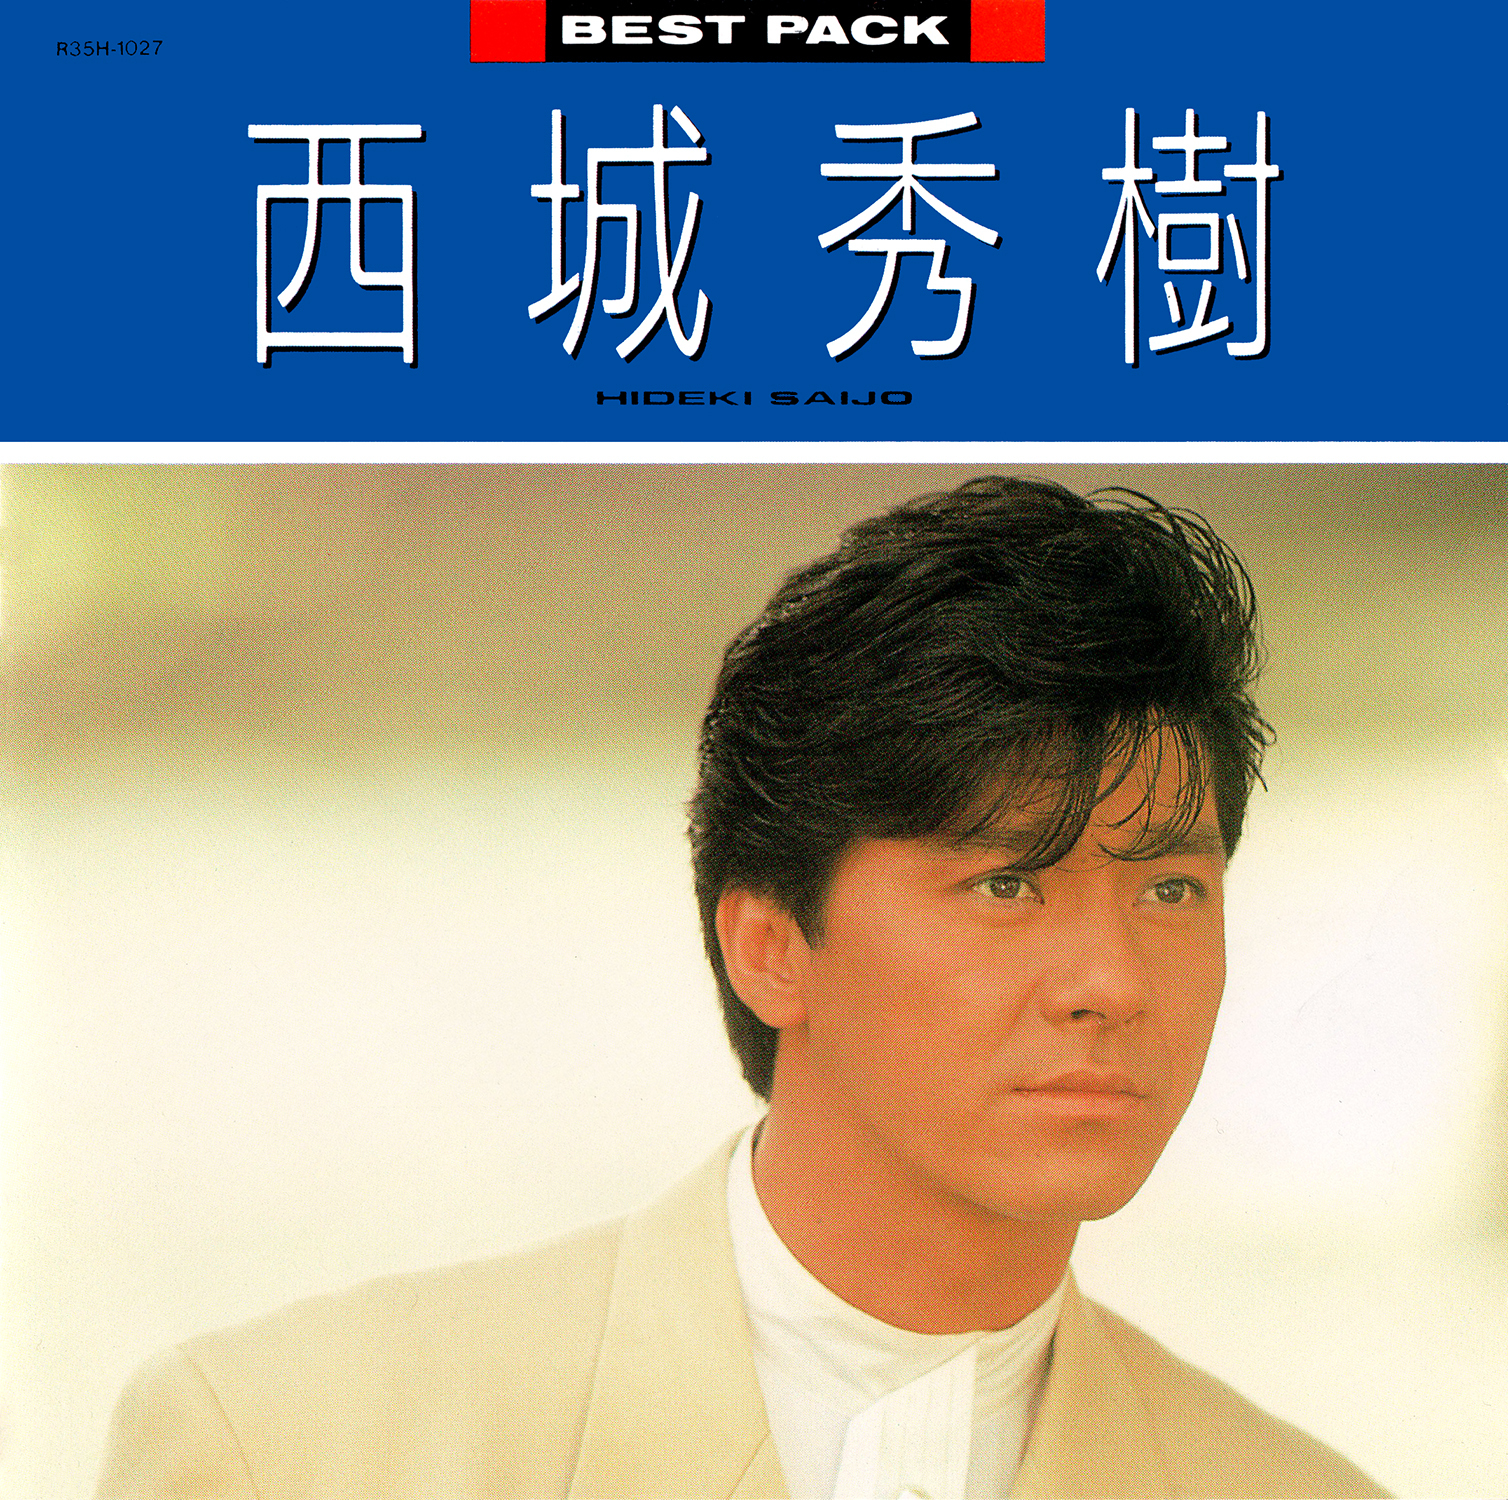 西城秀樹 (さいじょうひでき) ベスト・アルバム『BEST PACK '88』(1987 